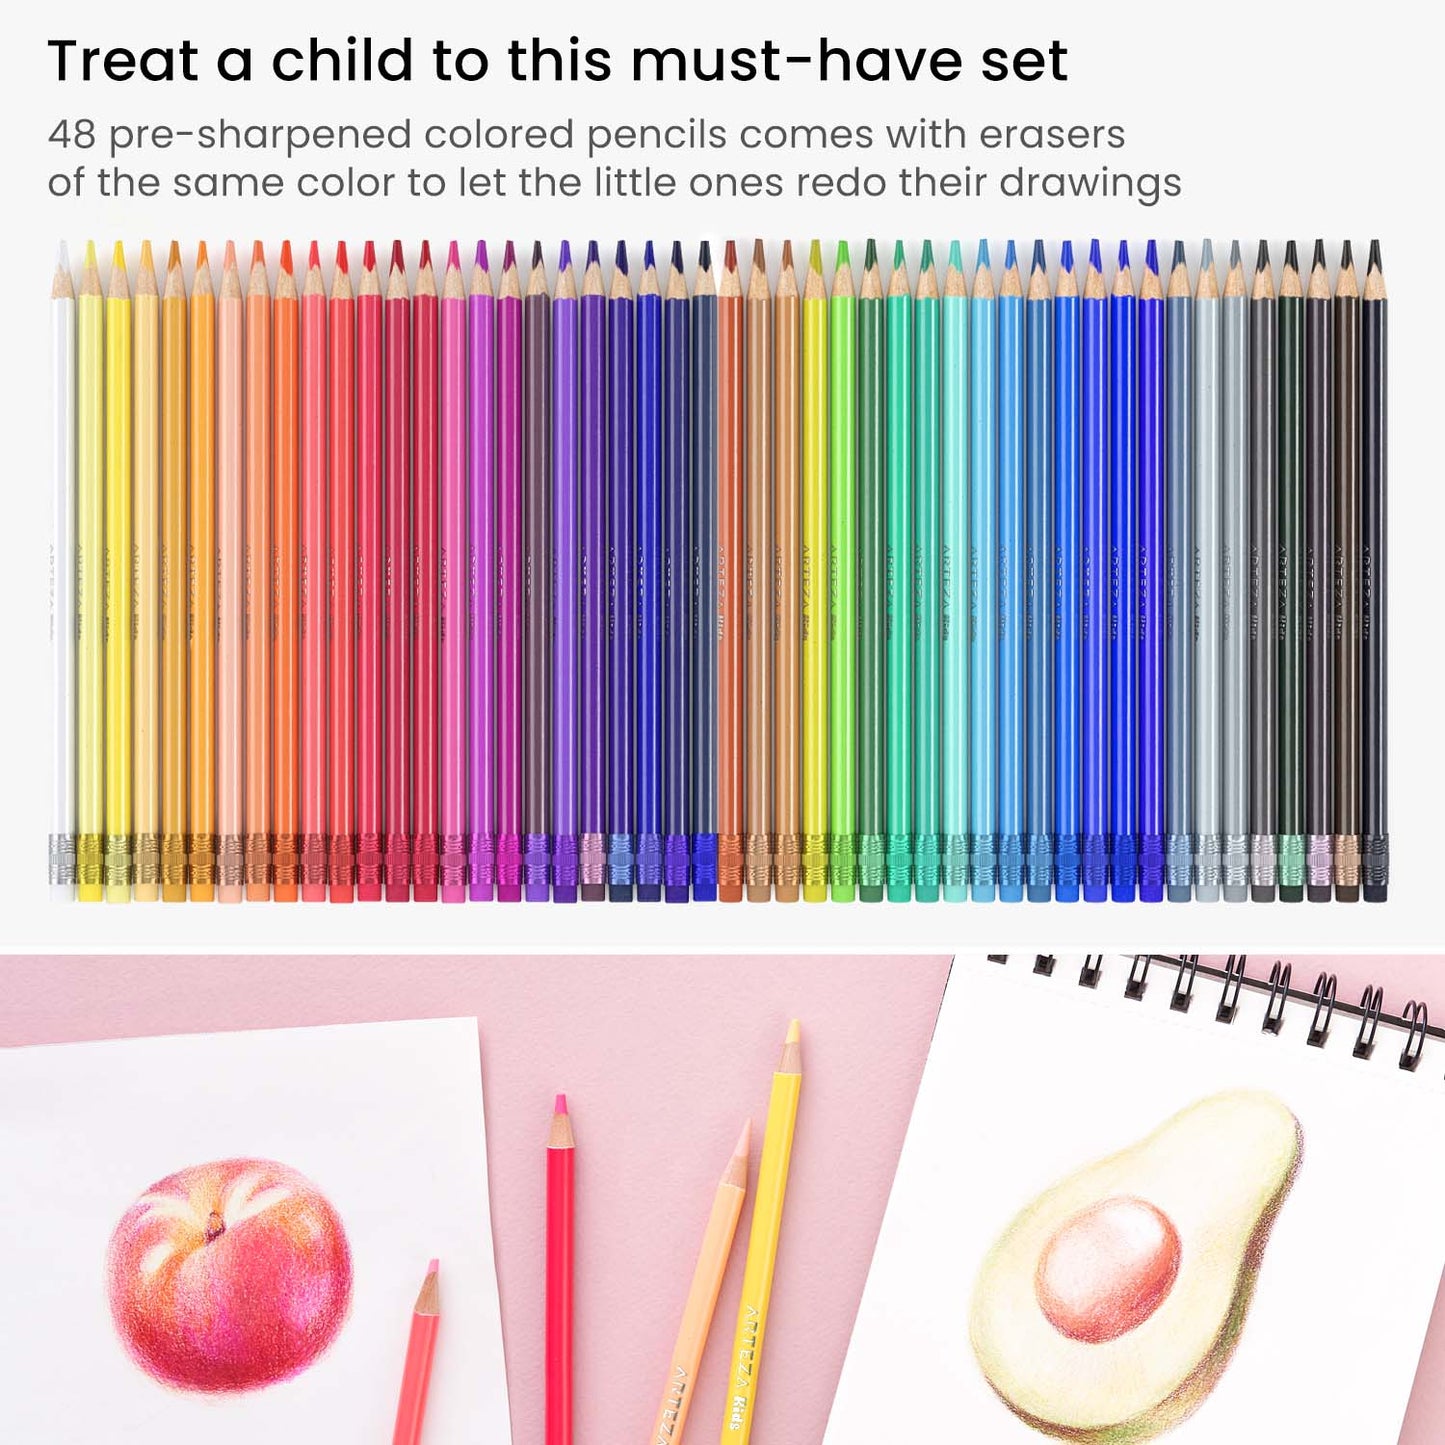 https://arteza.com/cdn/shop/products/kids-erasable-colored-pencils-set-of-48_ju2Y4676.jpg?v=1652894241&width=1445